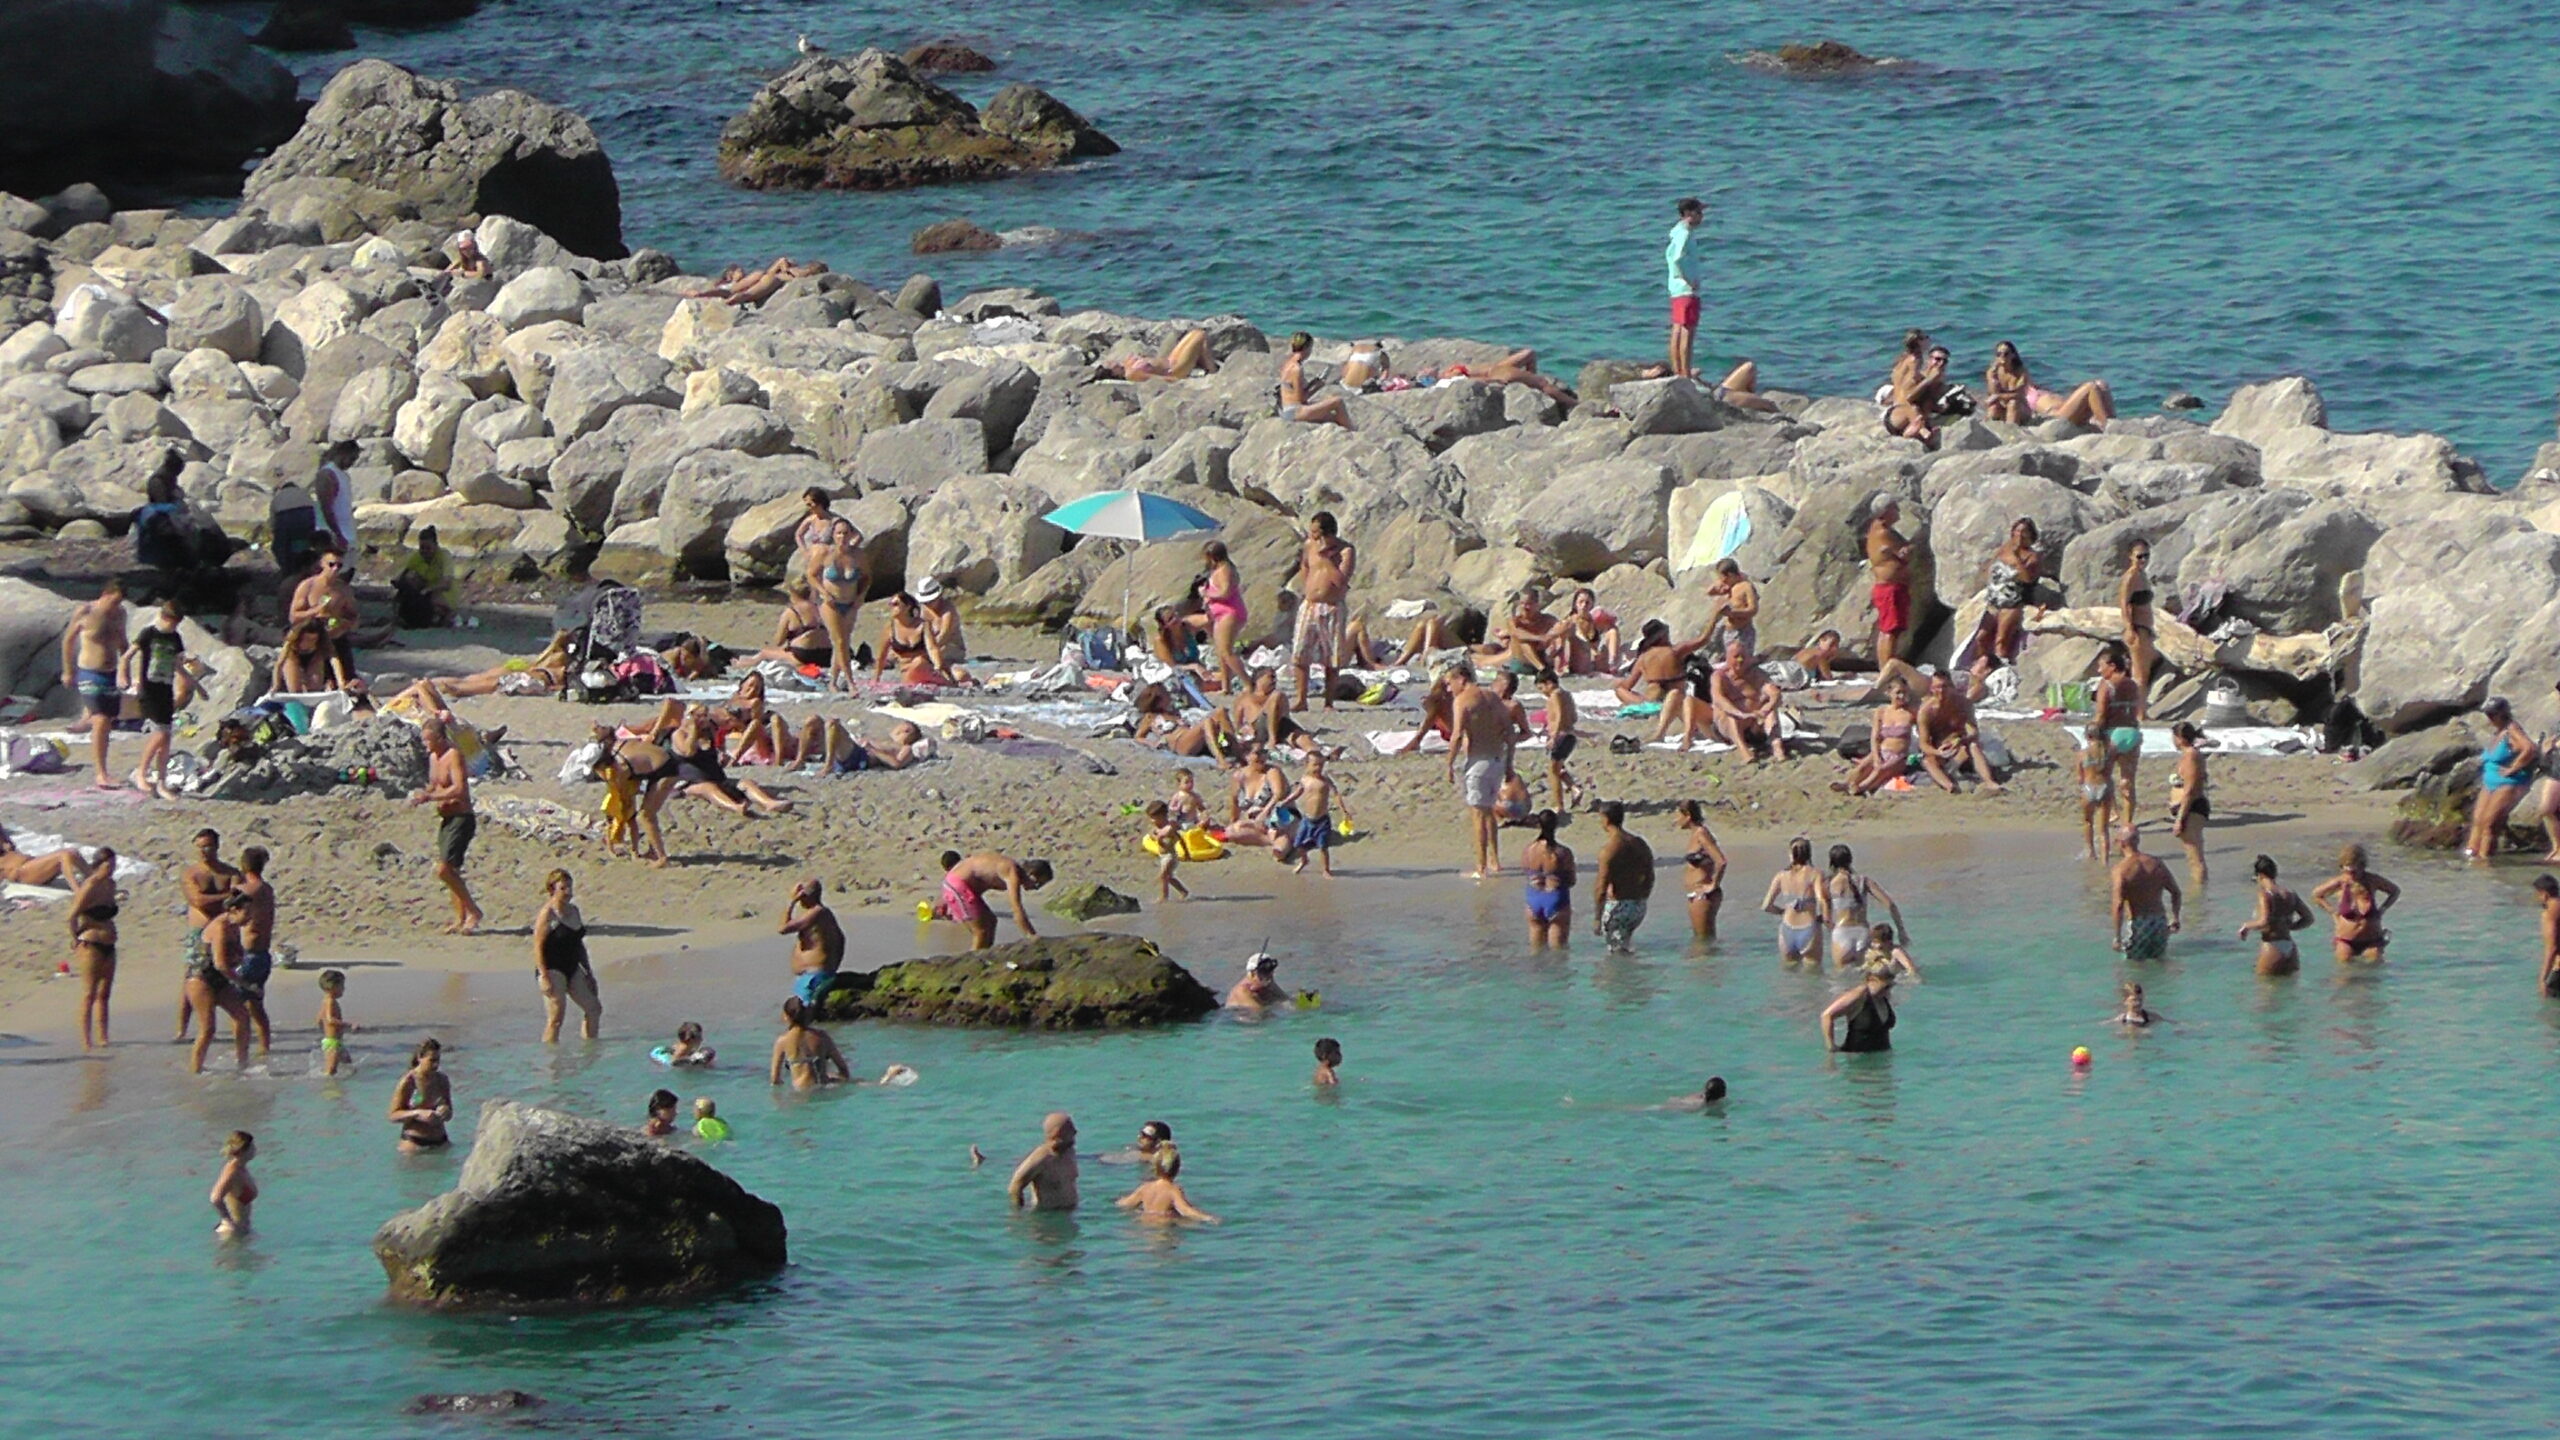 Autunno estivo a Capri: spiagge invase dai bagnanti e strade affollate (foto e video)